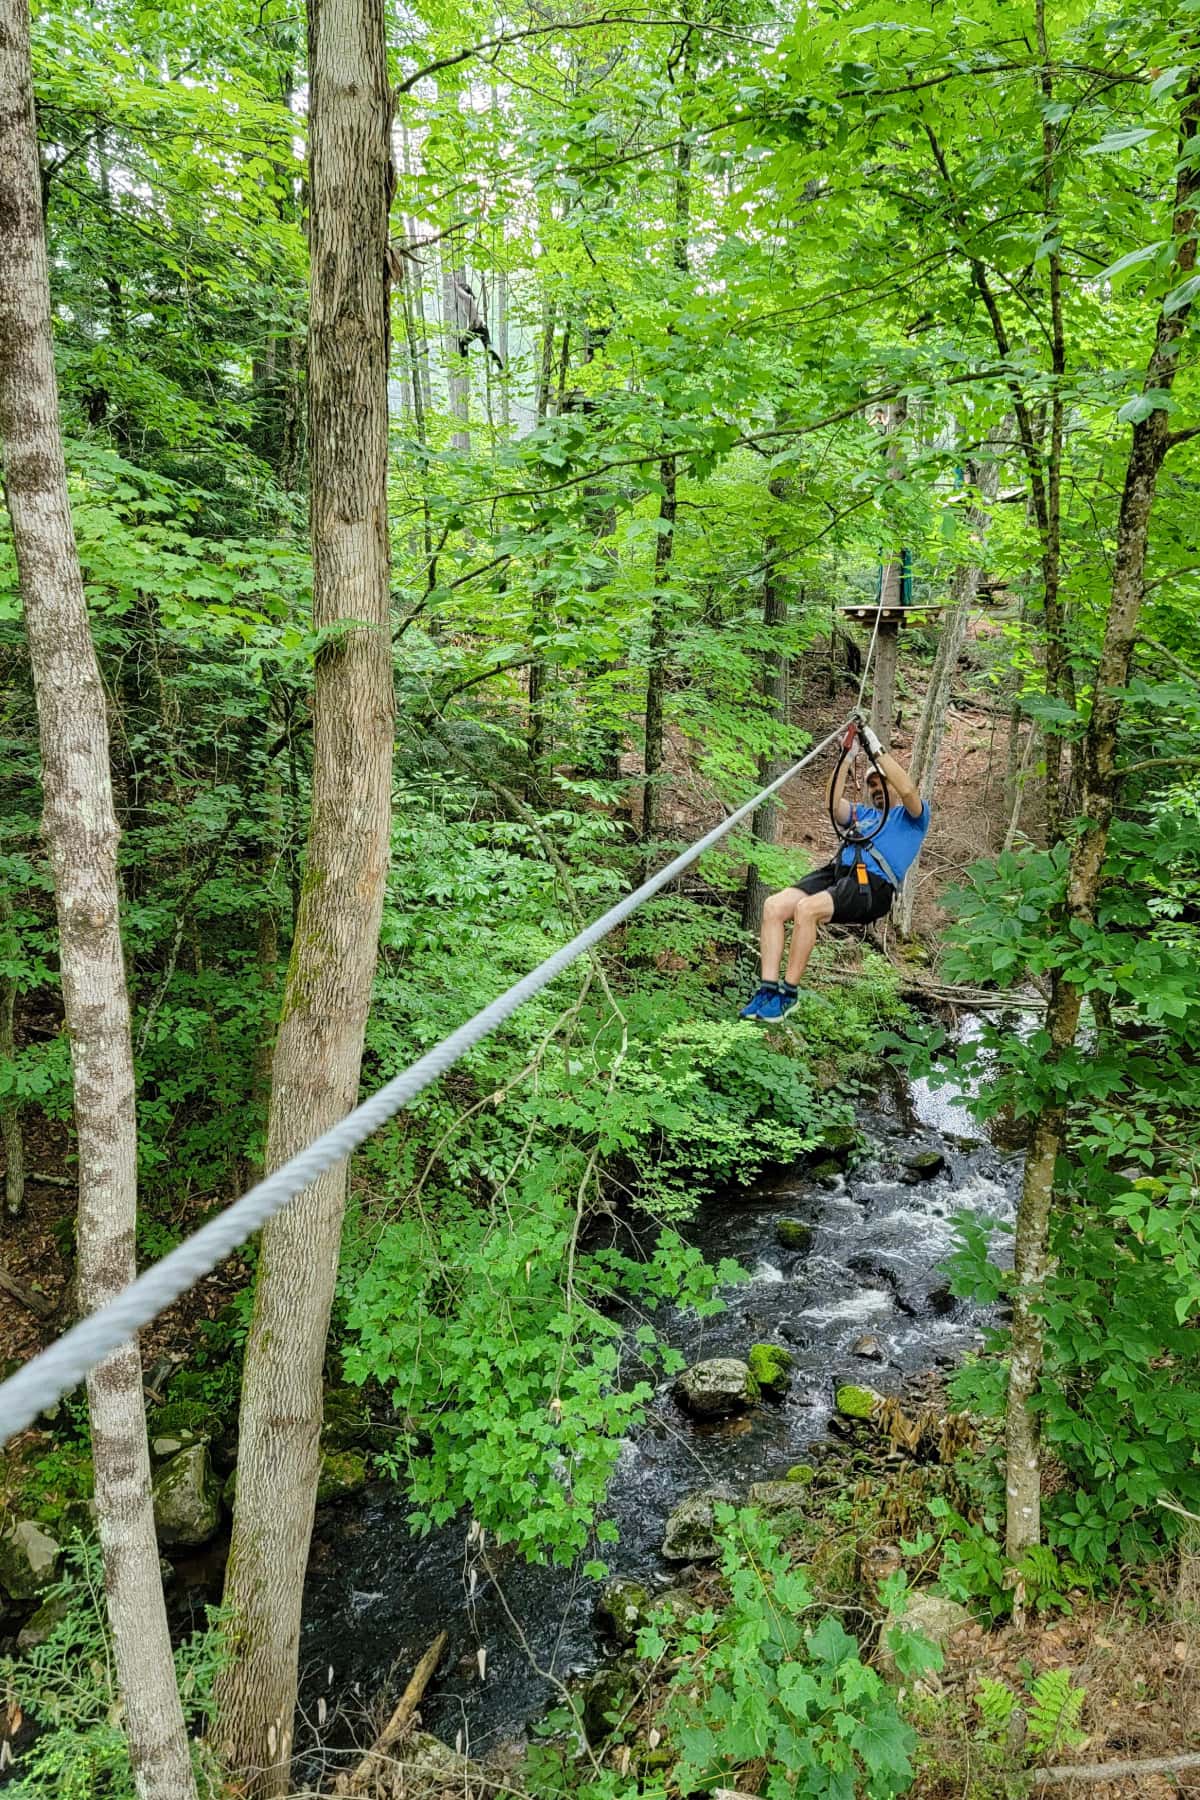 Ziplining at Adirondack Extreme